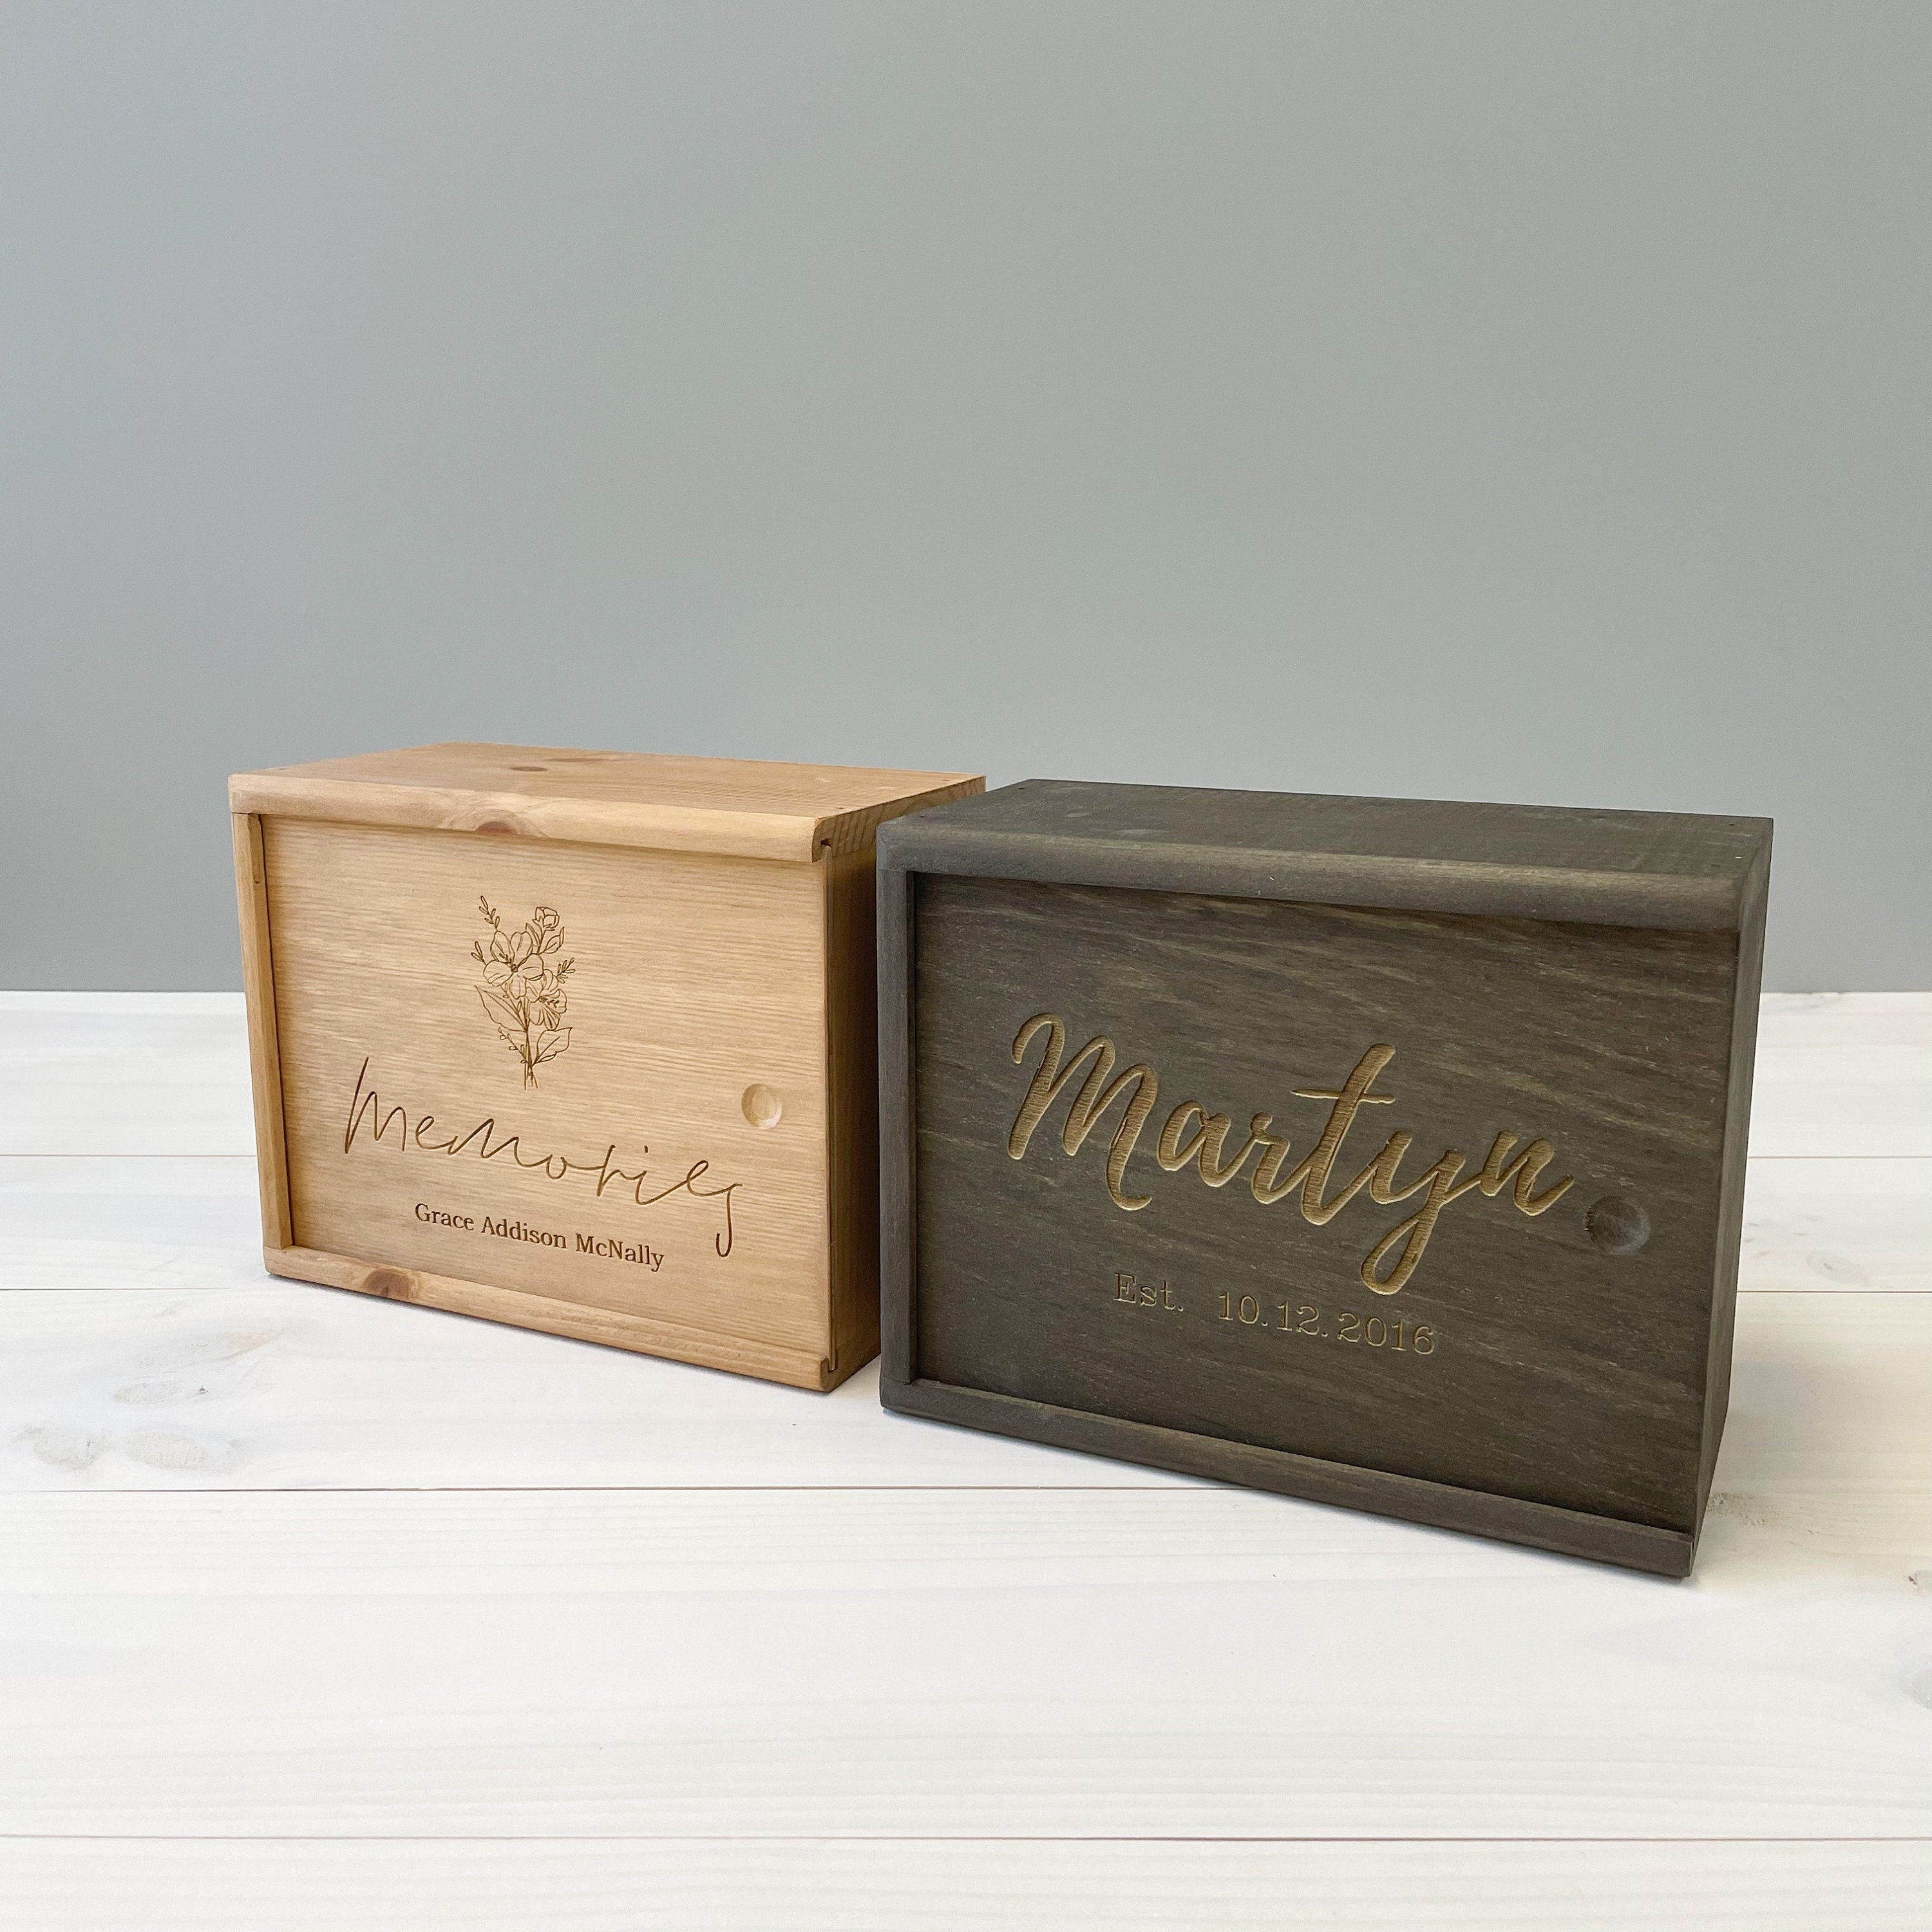  Cajas de regalo de madera, caja de memoria grande para